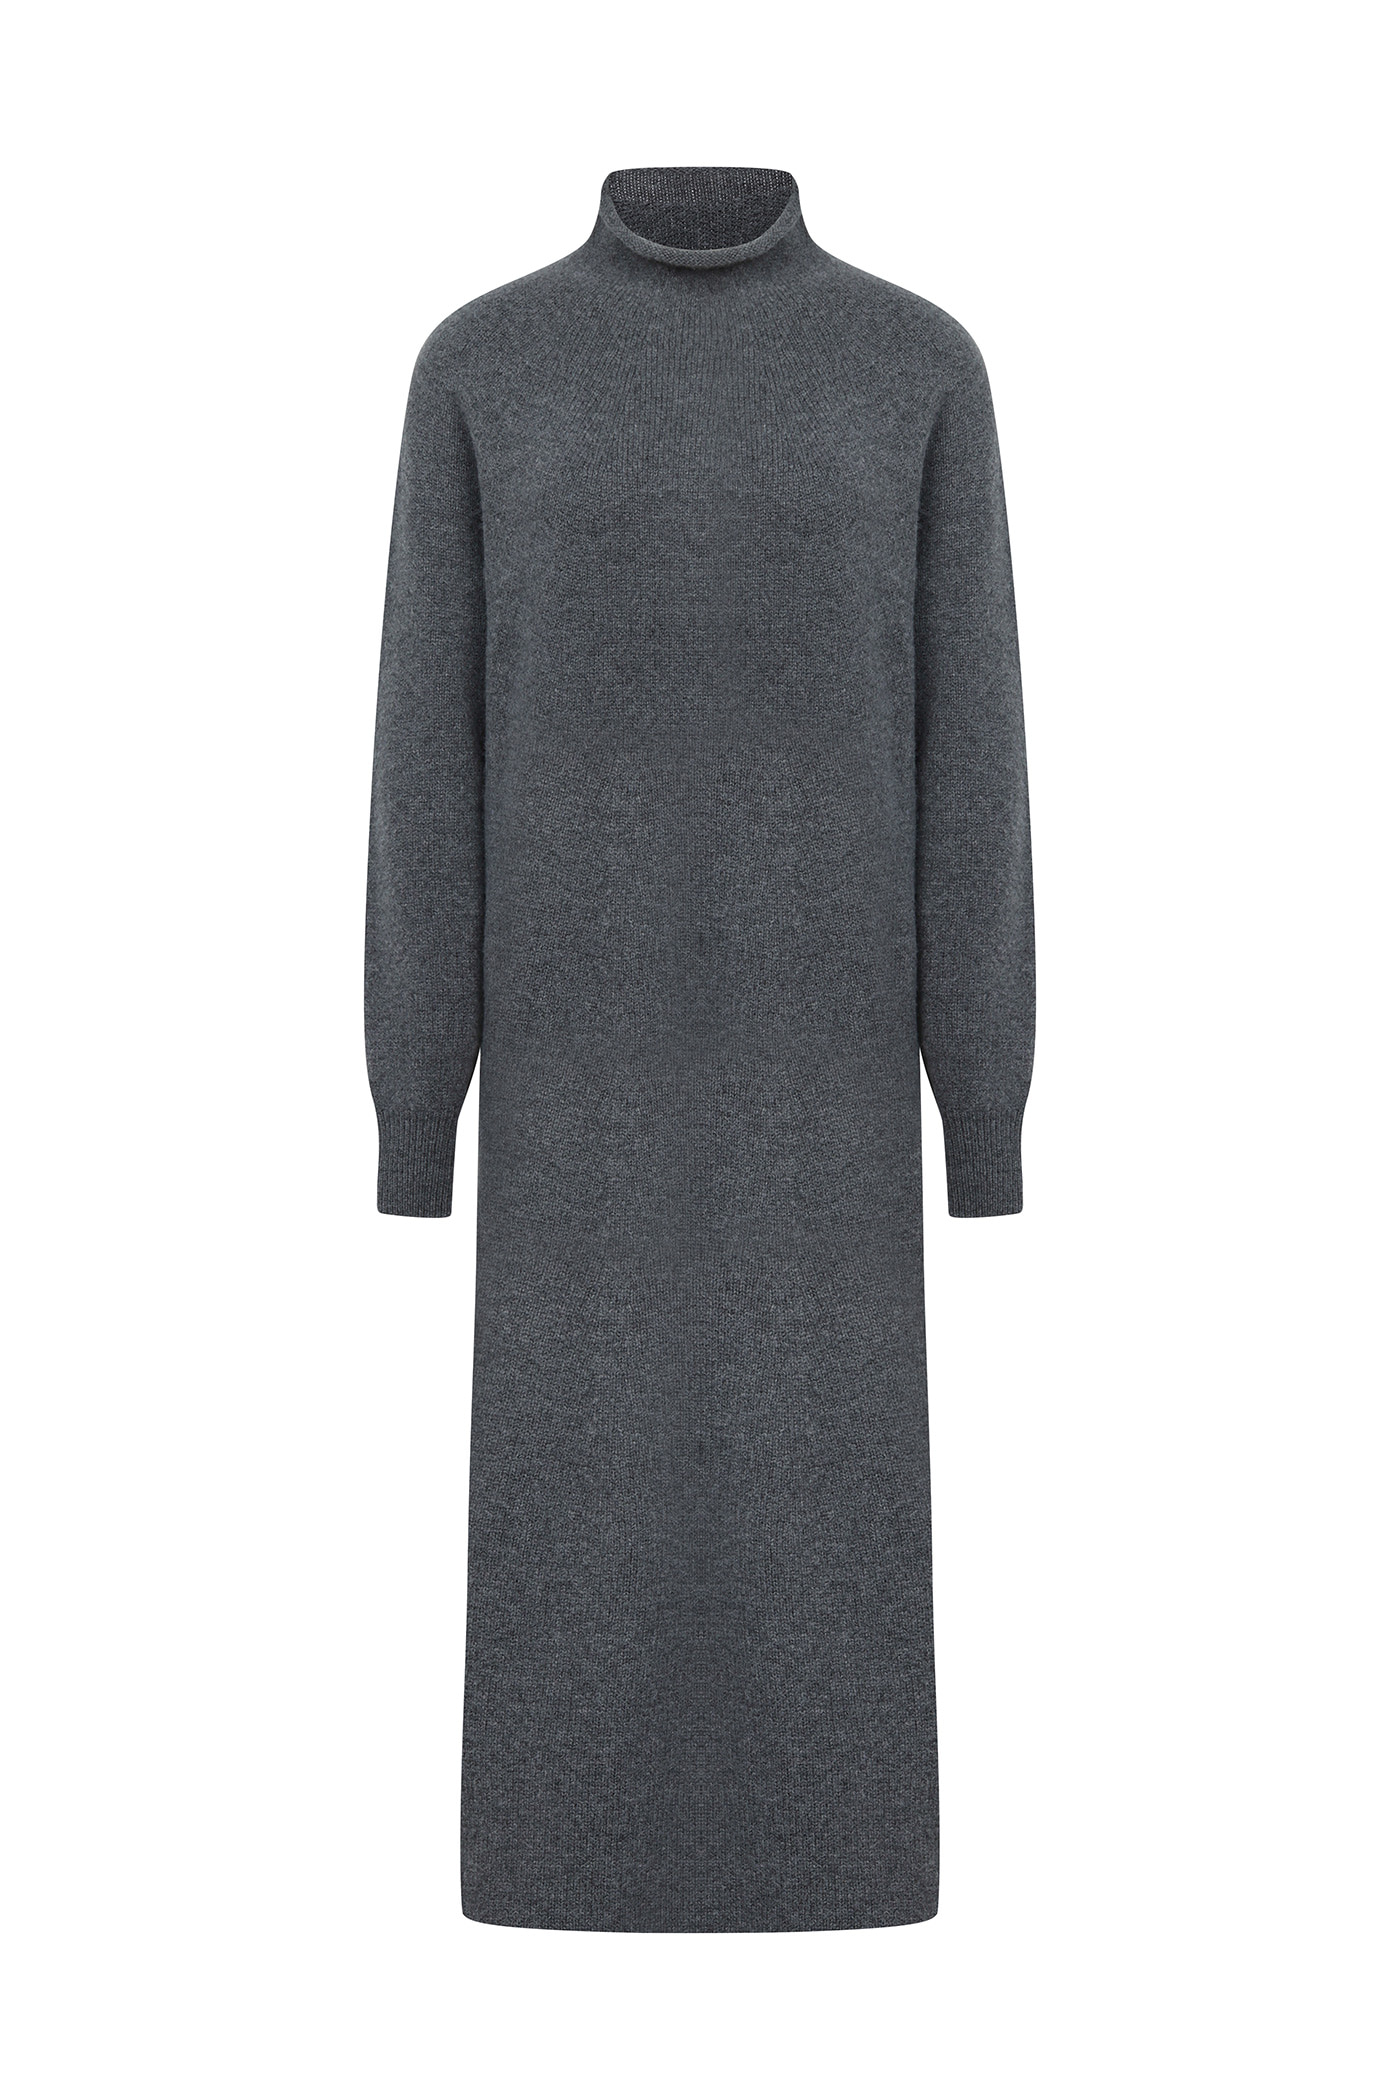 Merino Wool 100 Wholegarment Knit Dress[LMBBWIKN159]-Dark Gray